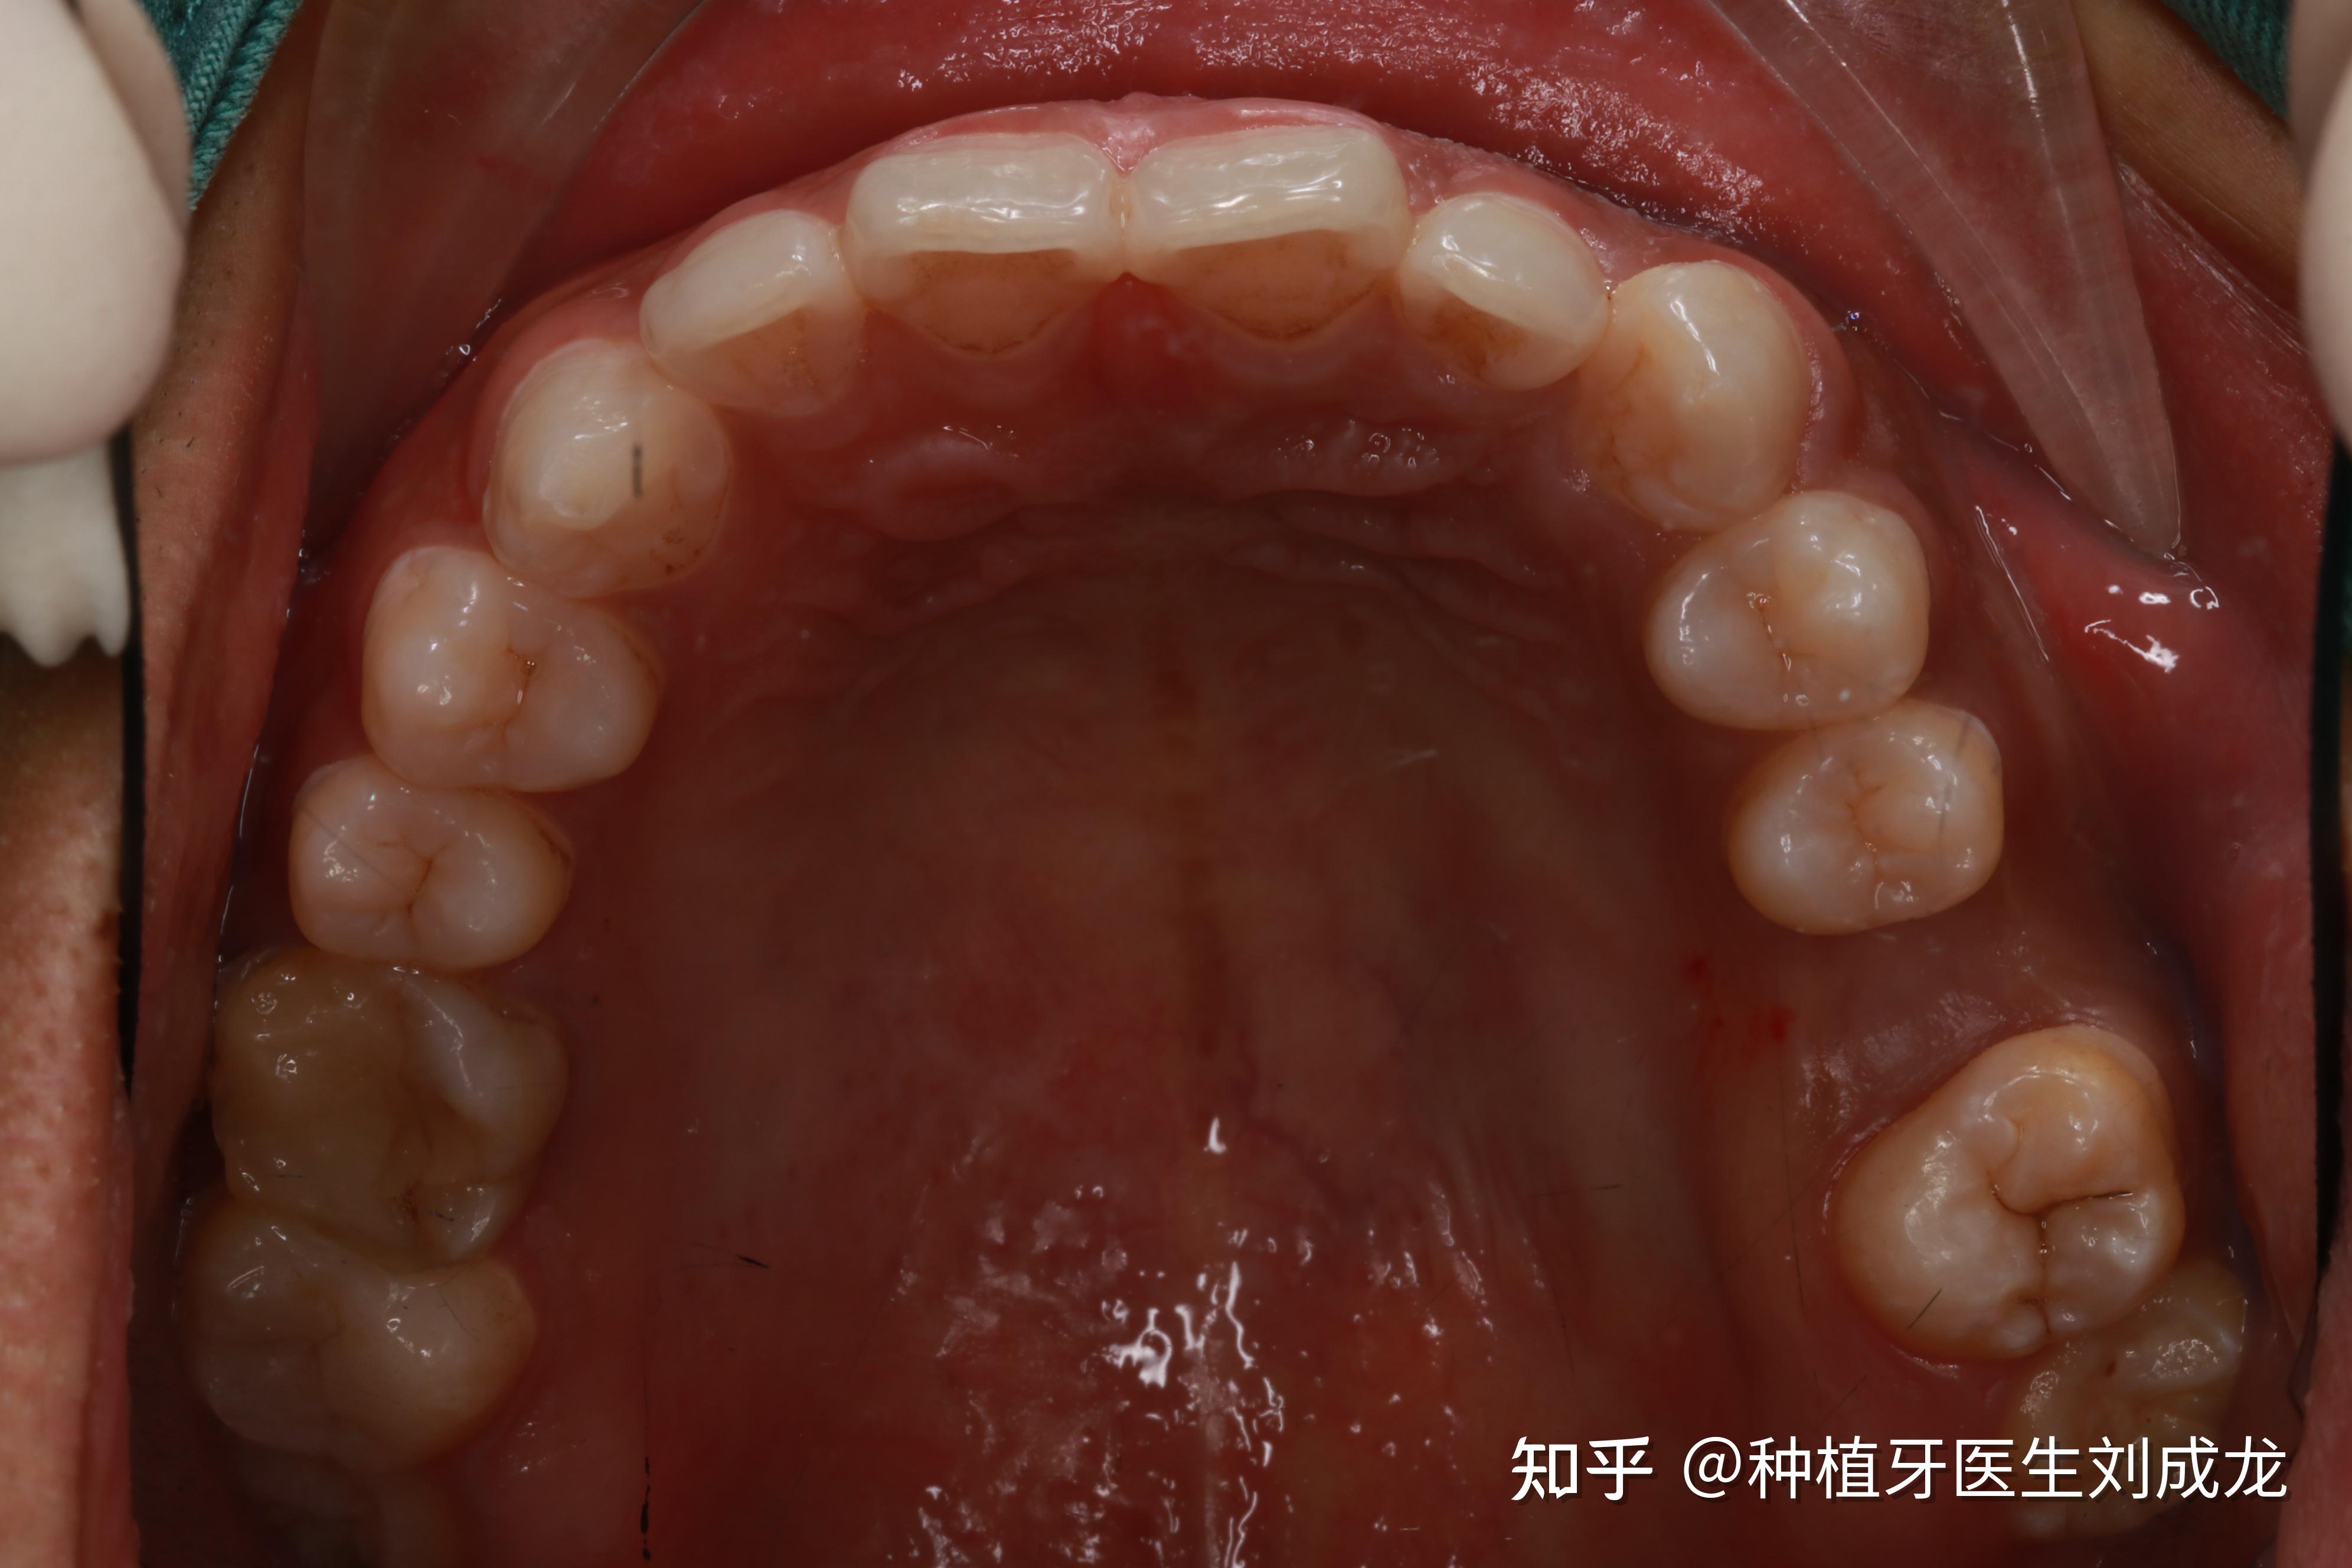 郑州瑞士iti种植牙医生刘成龙上颌磨牙区单颗种植案例